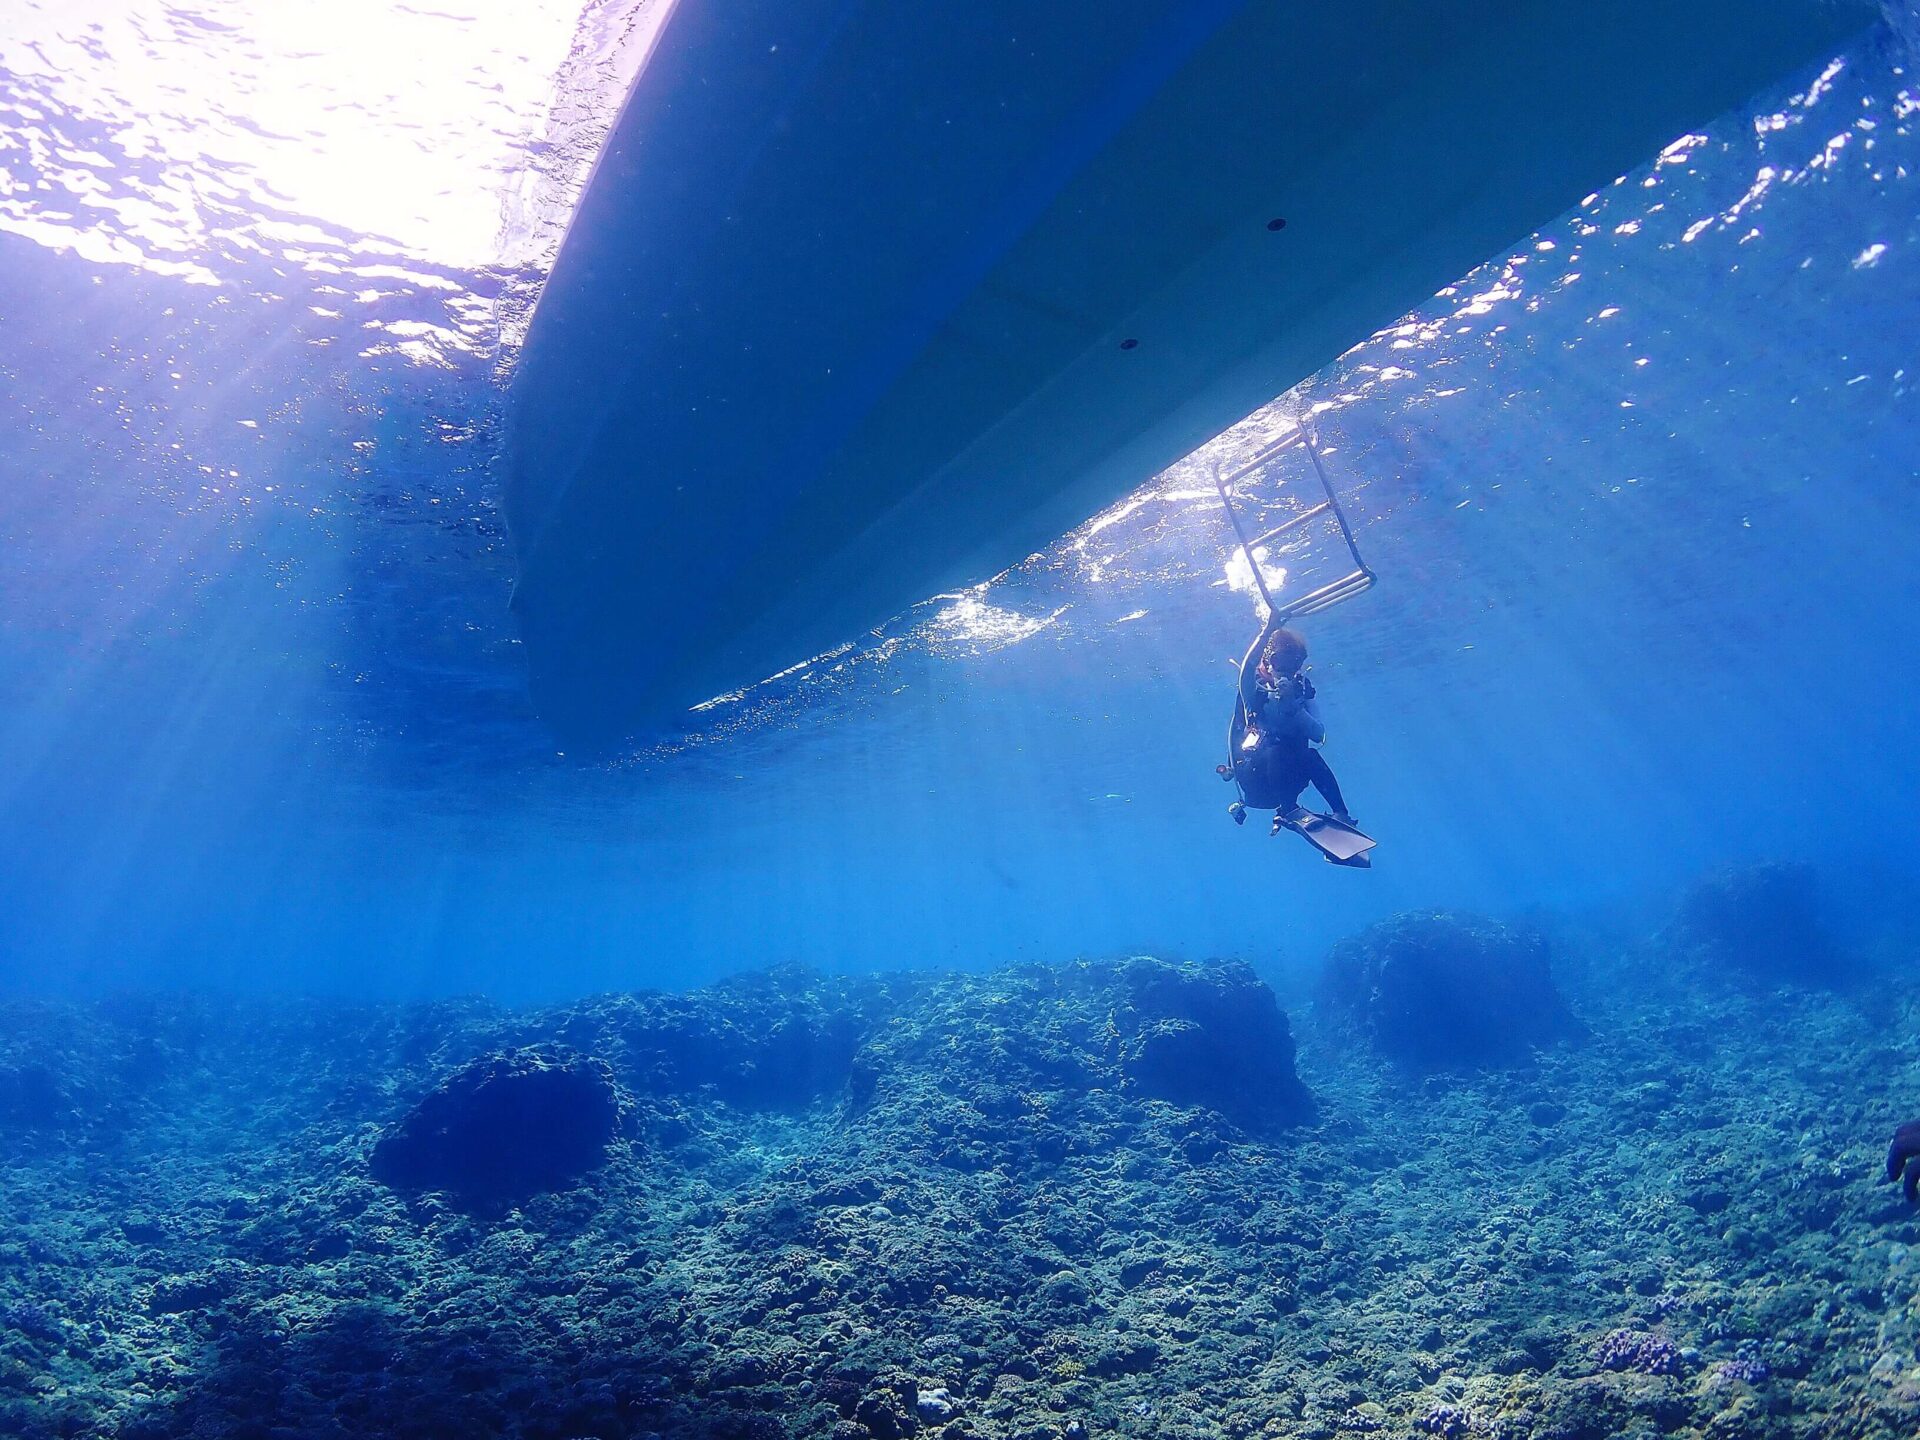 潛水人生 澳洲潛水 日本潛水 沖繩潛水 塞班島潛水 打工度假